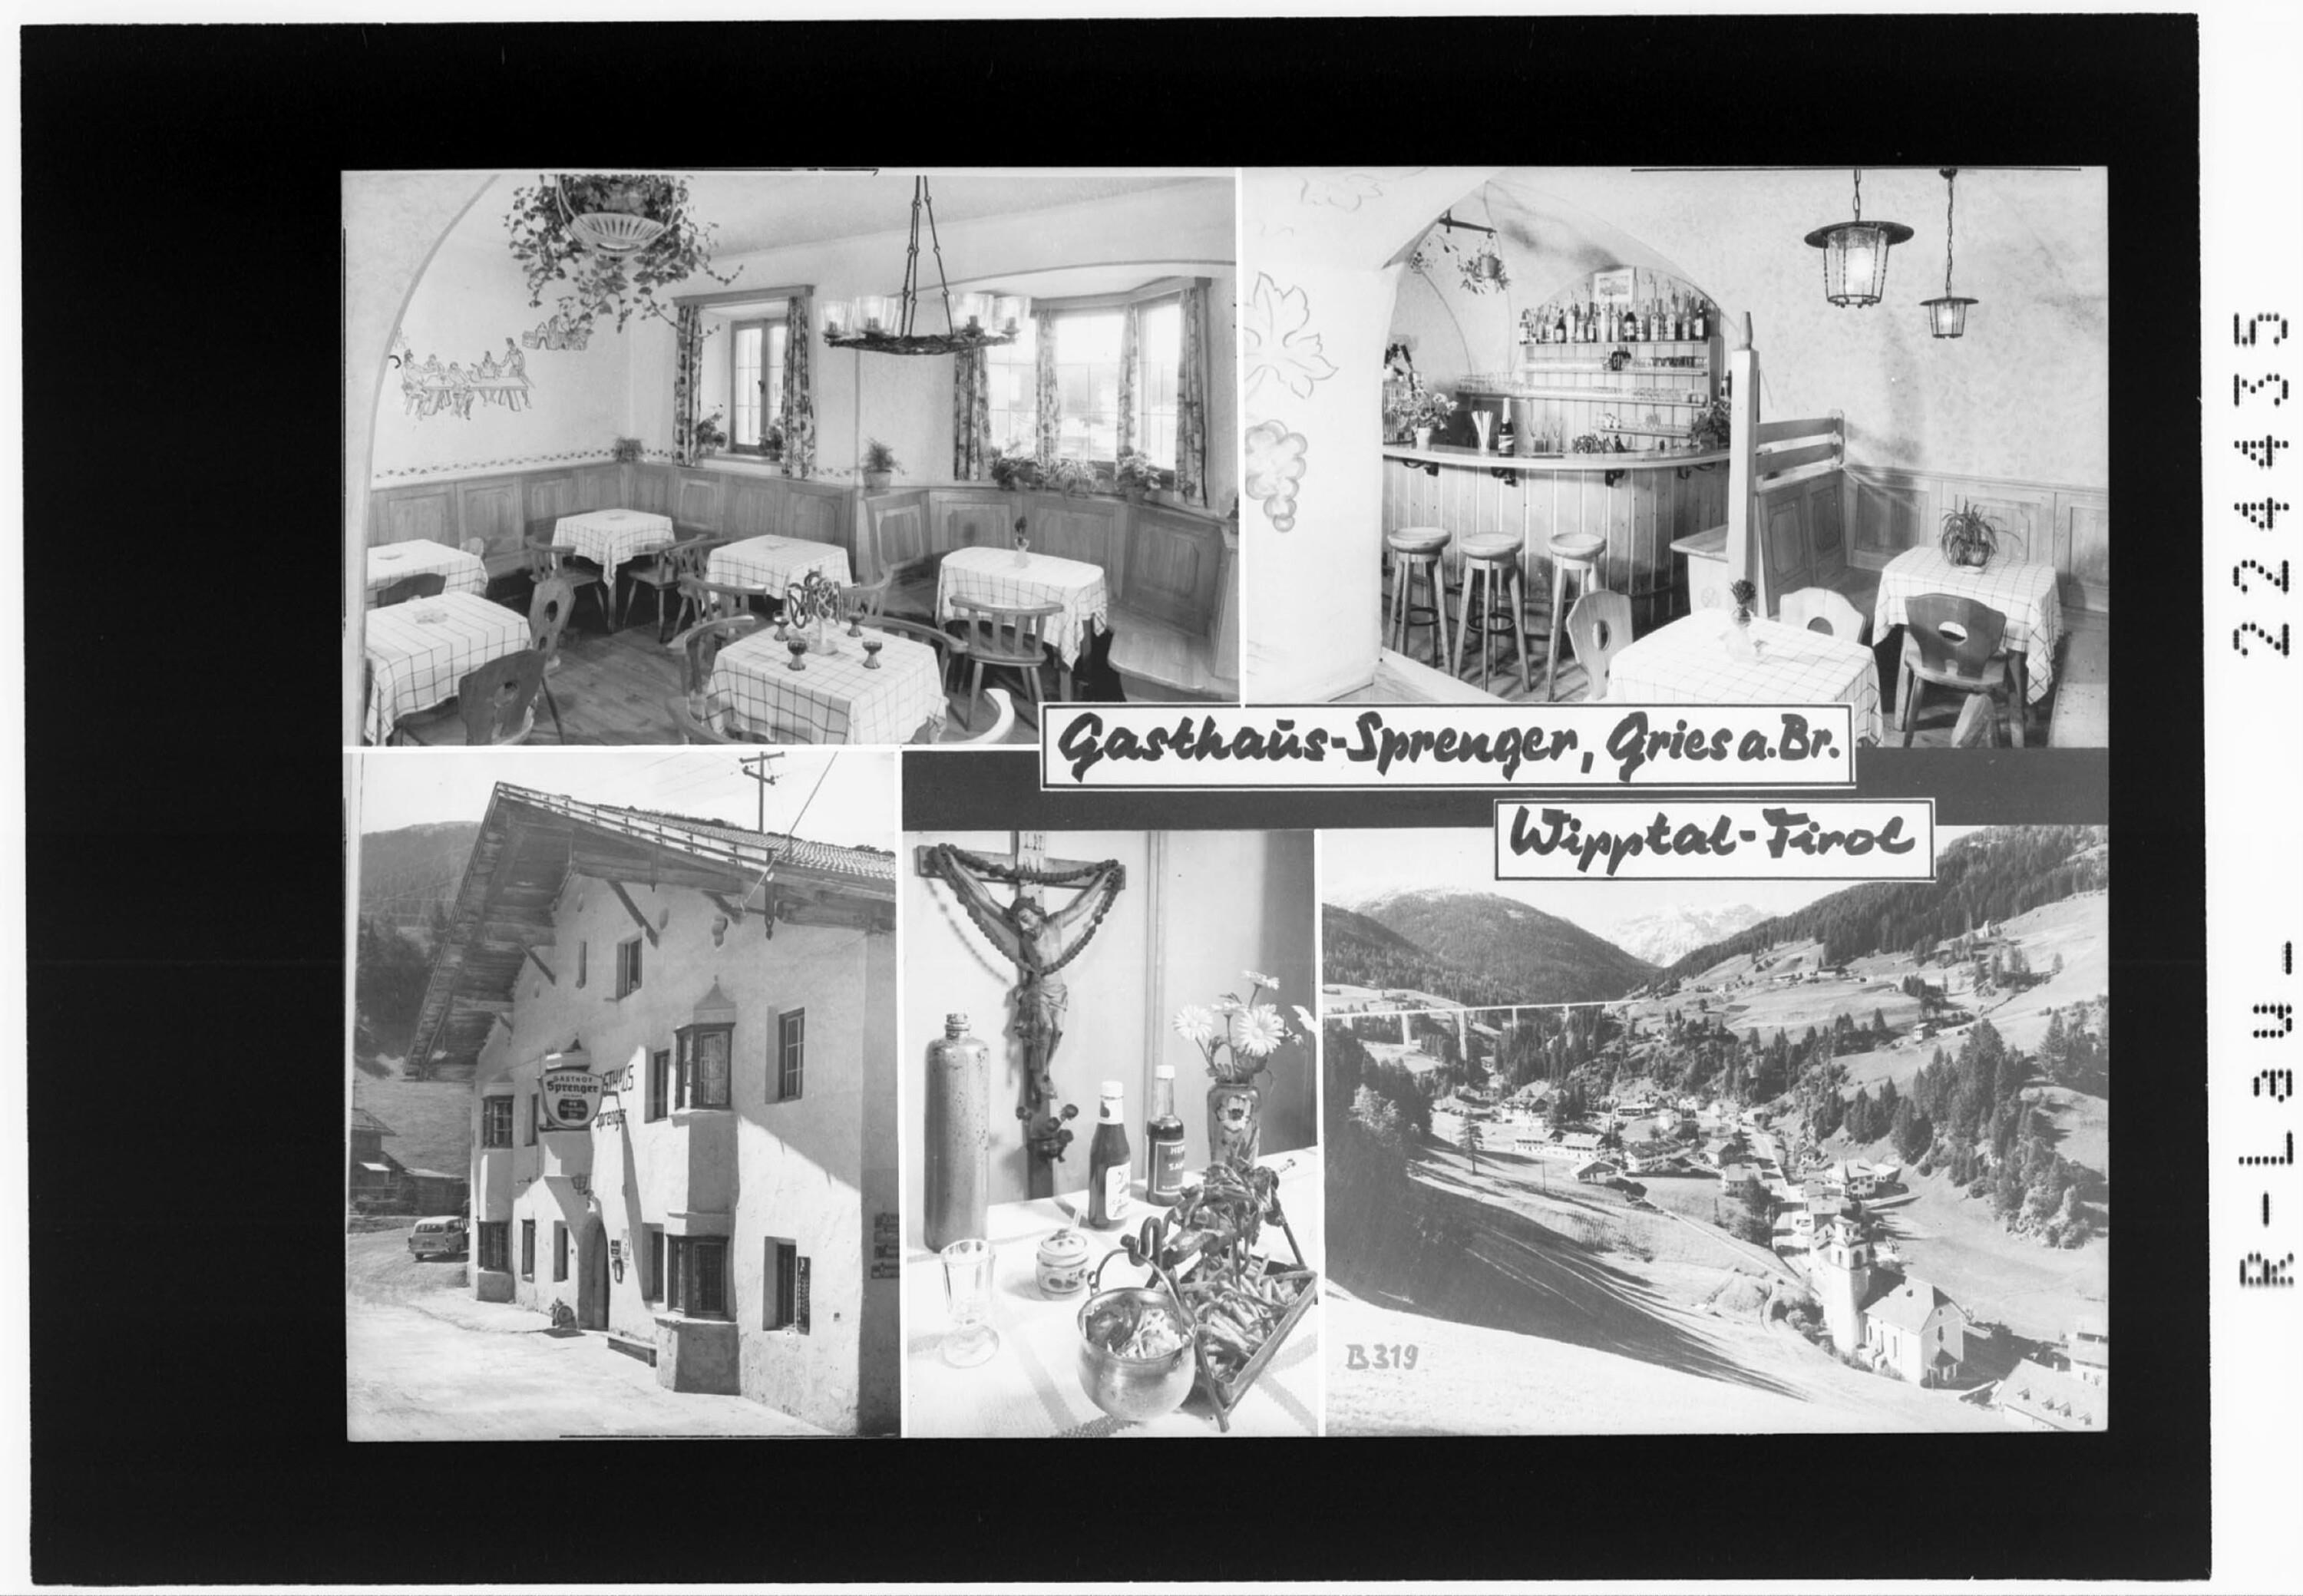 Gasthaus Sprenger / Gries am Brenner / Wipptal - Tirol></div>


    <hr>
    <div class=